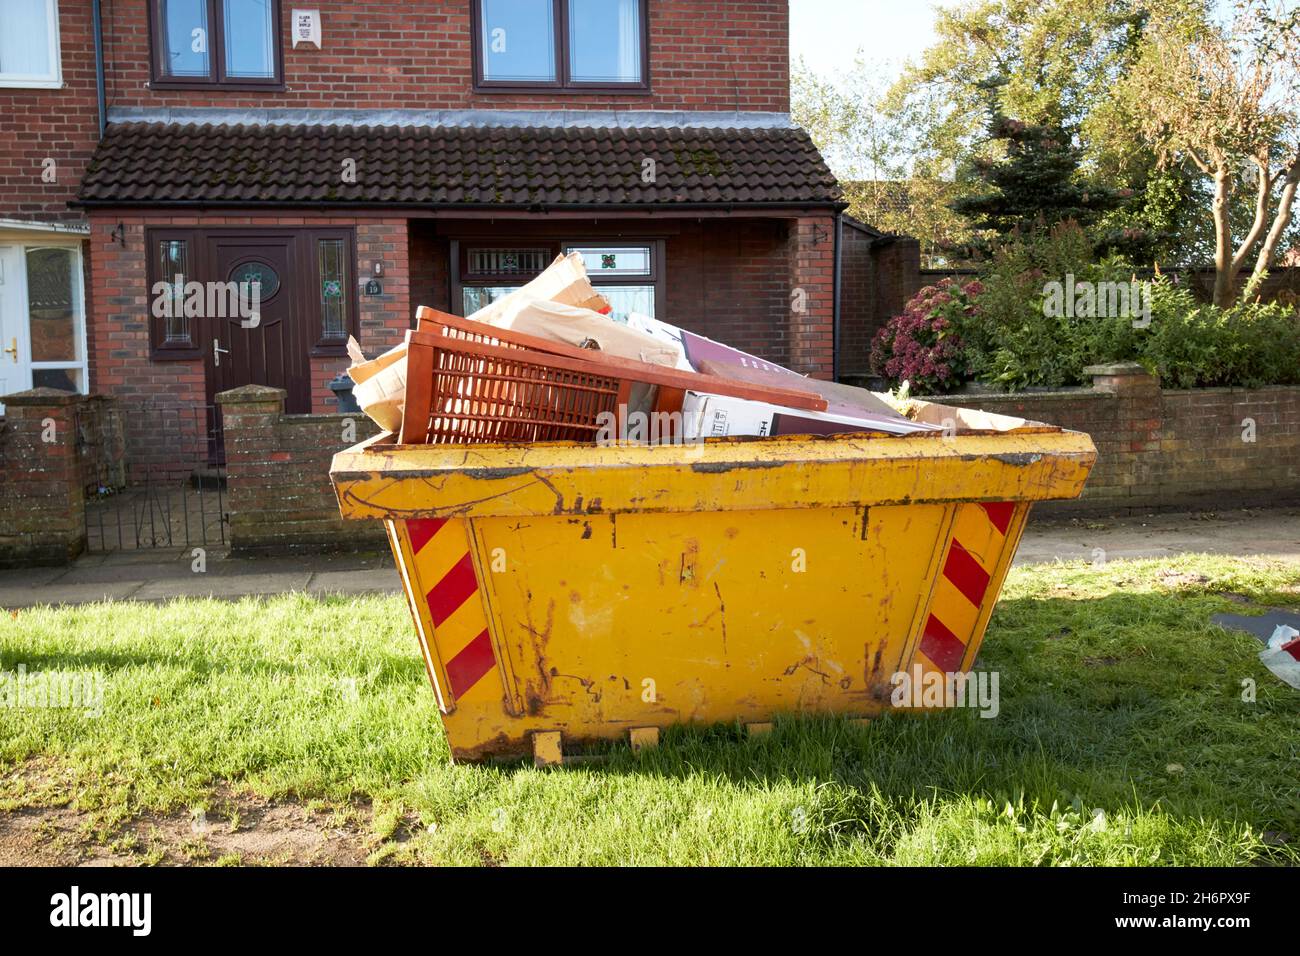 Kompletter sprung vor einem Haus in einem Wohngebiet Wohnhausverbesserungen Liverpool merseyside uk Stockfoto